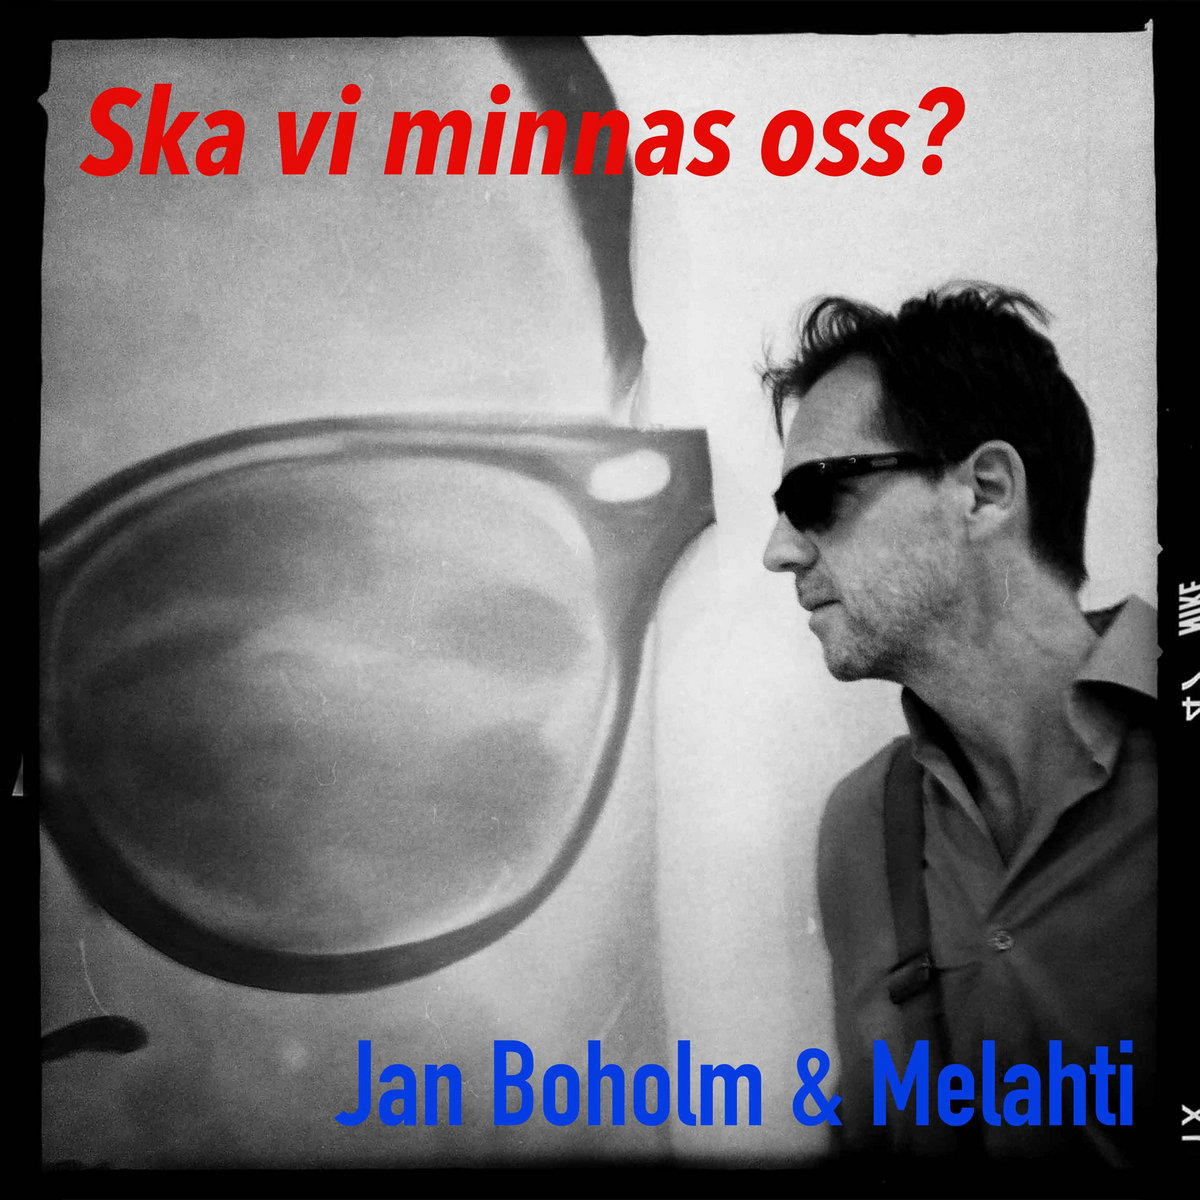 Jan Boholm